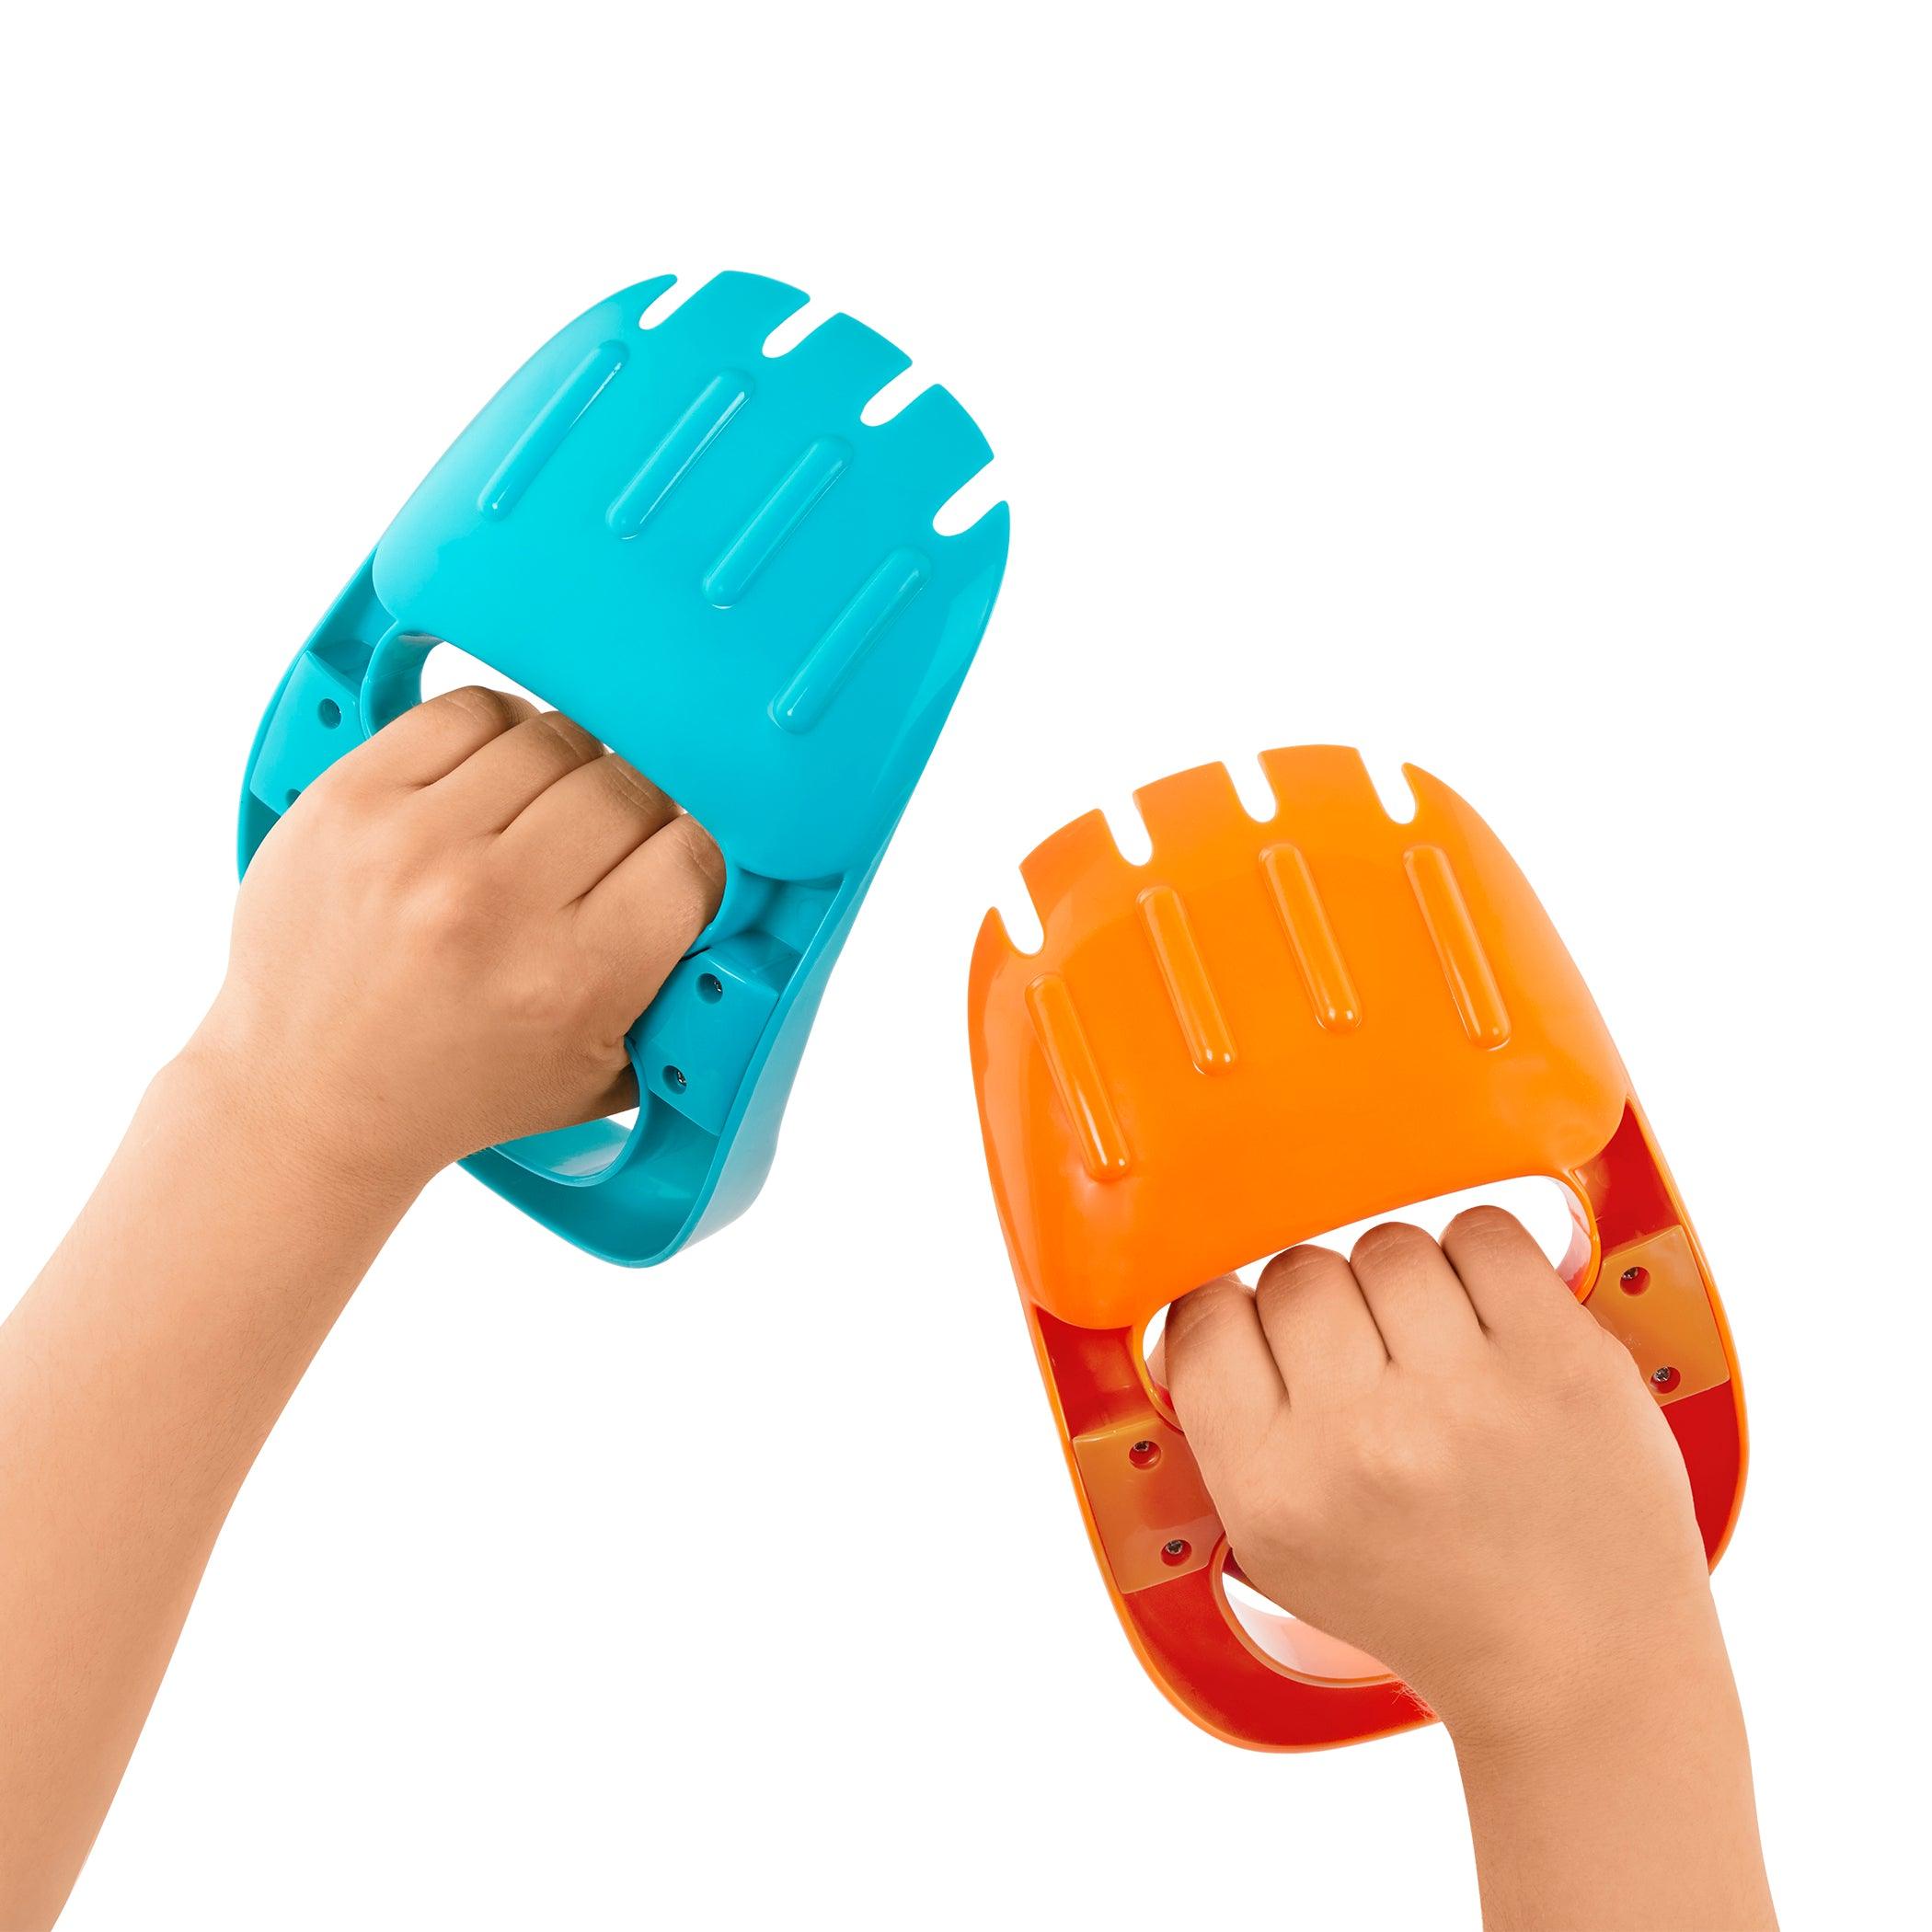 B.Toys: Sandgräber Handsschaufeln